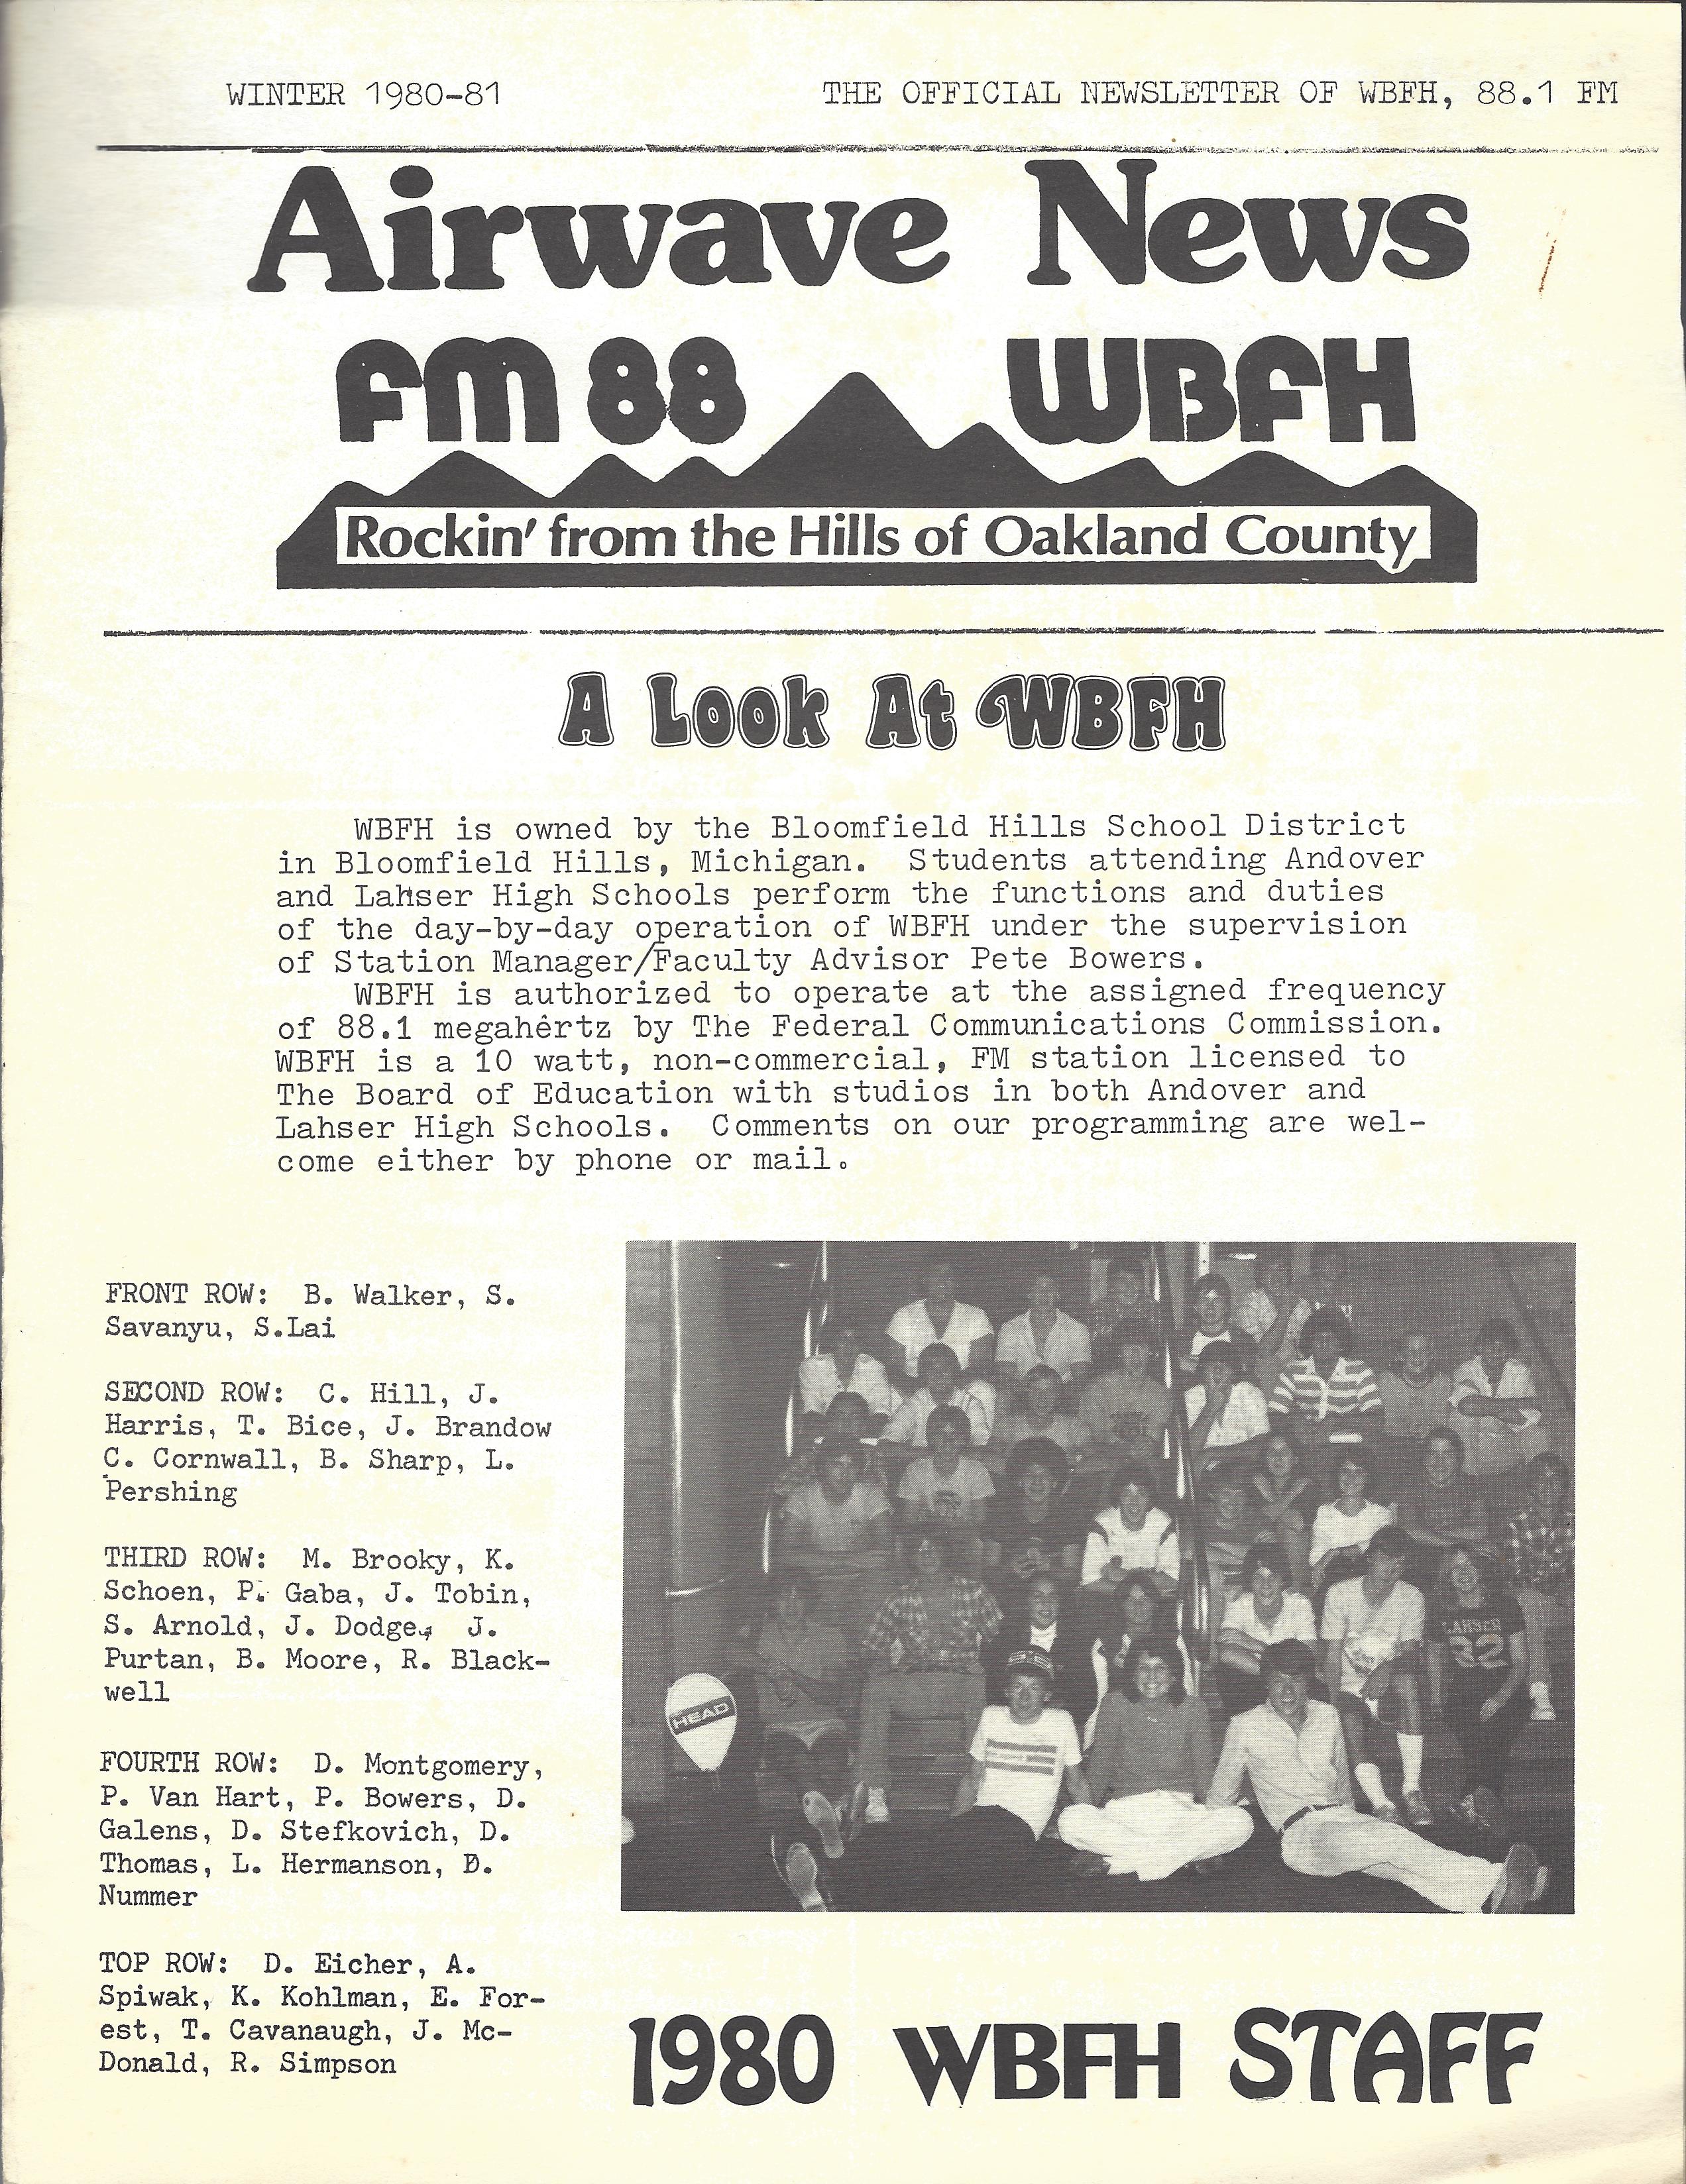 1980 newsletter